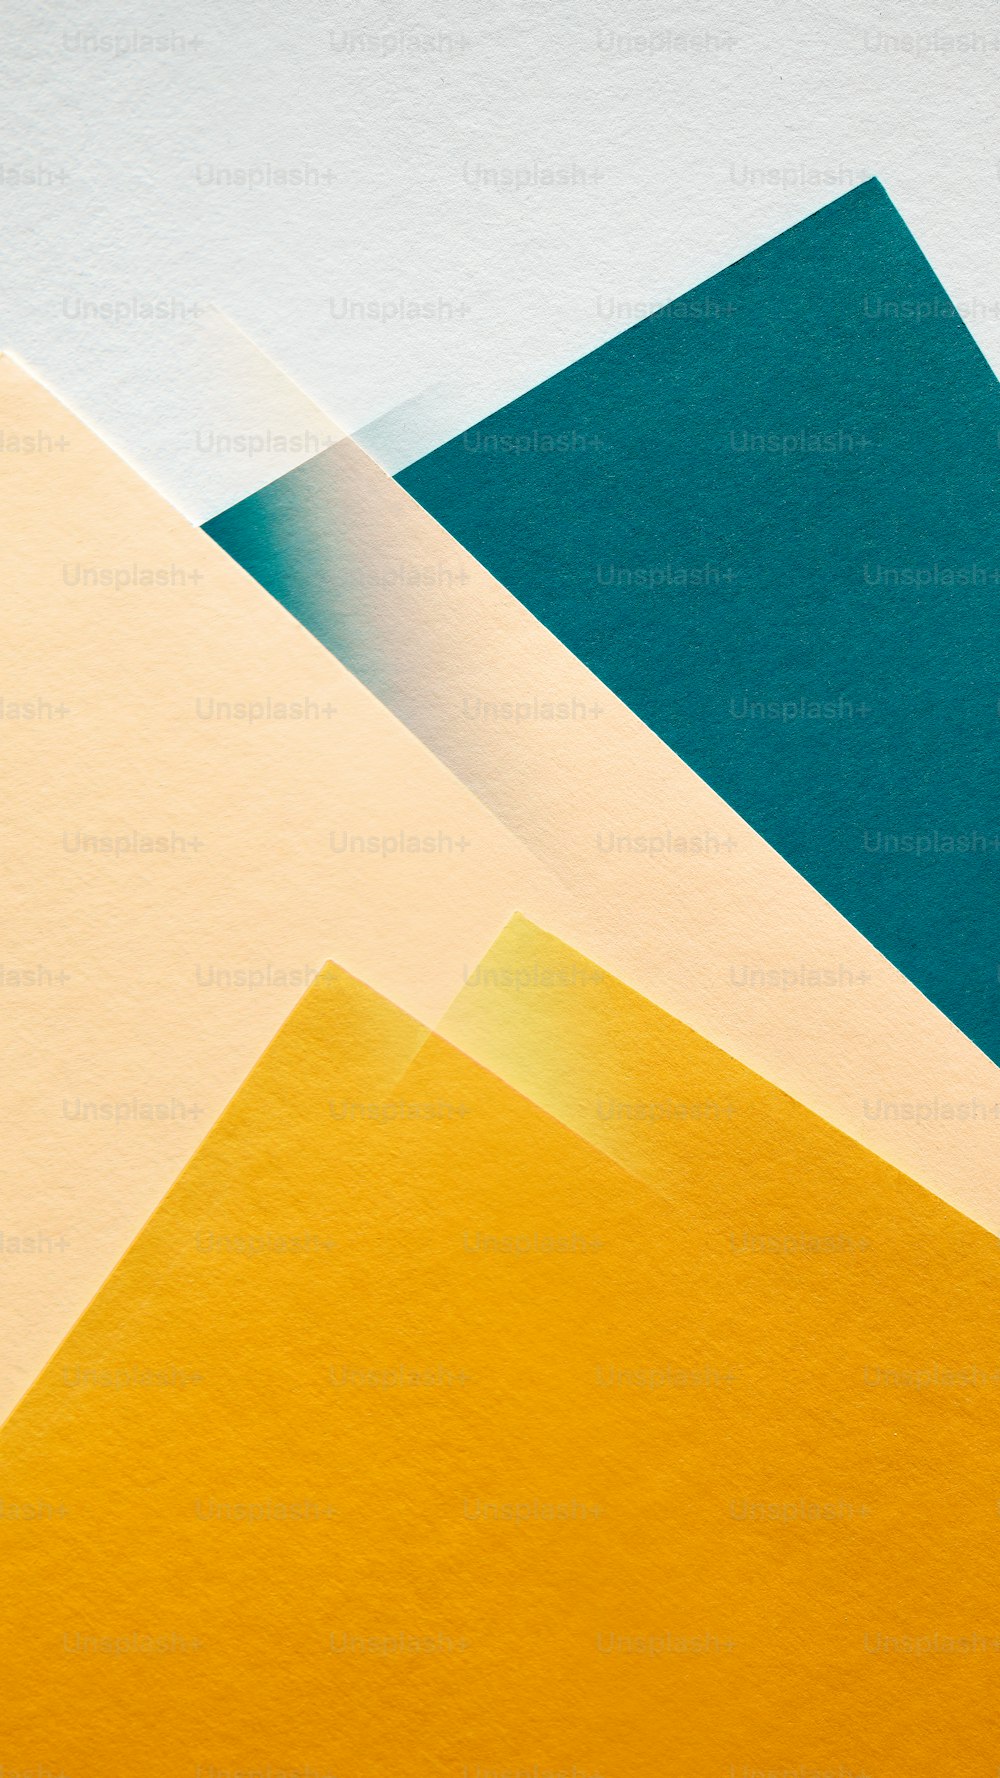 Un grupo de diferentes colores de papel uno encima del otro